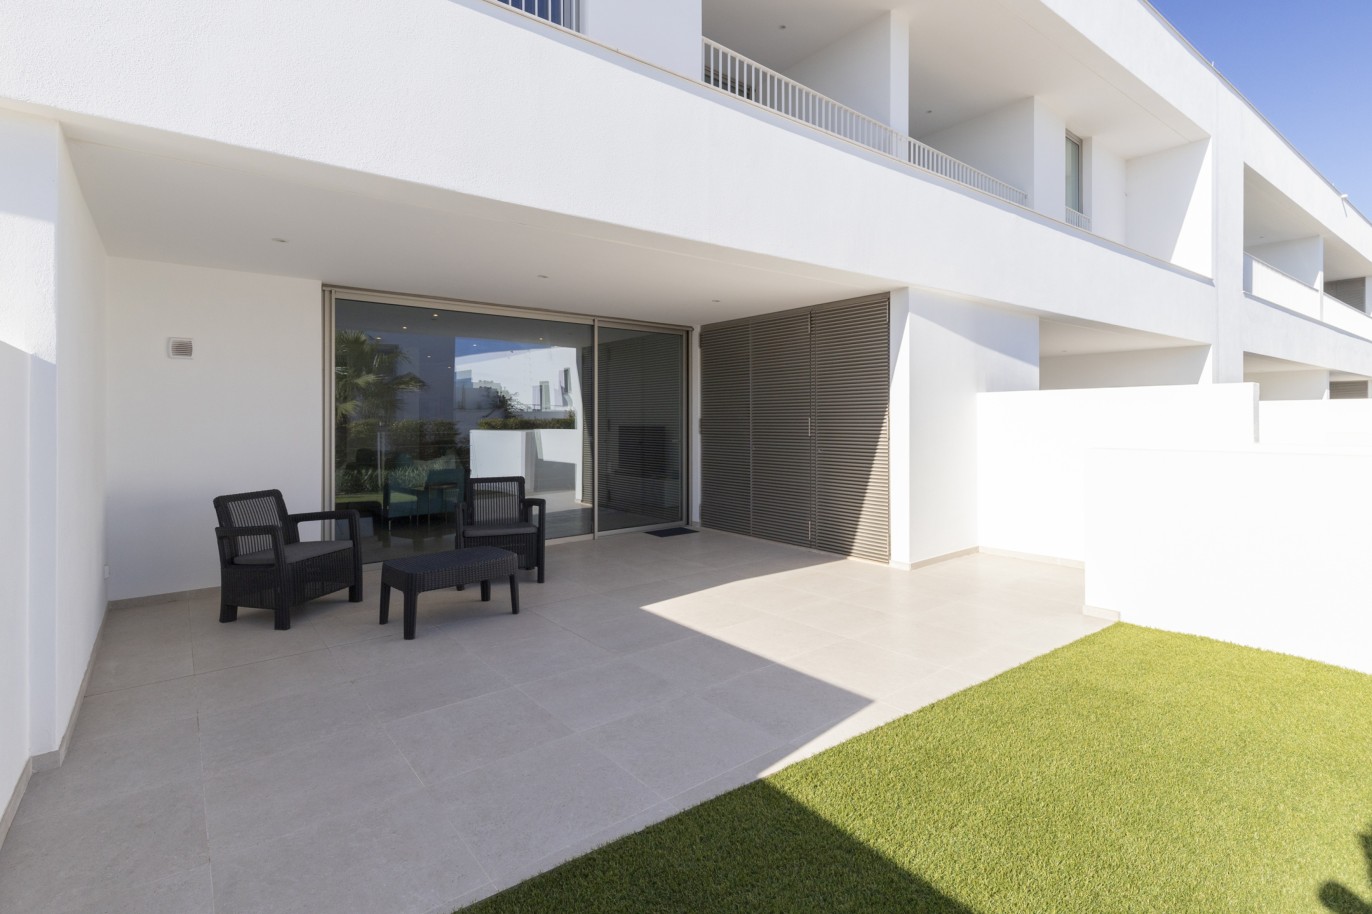 Villa de 3 chambres en copropriété privée, à vendre, à Lagos, Algarve_217639